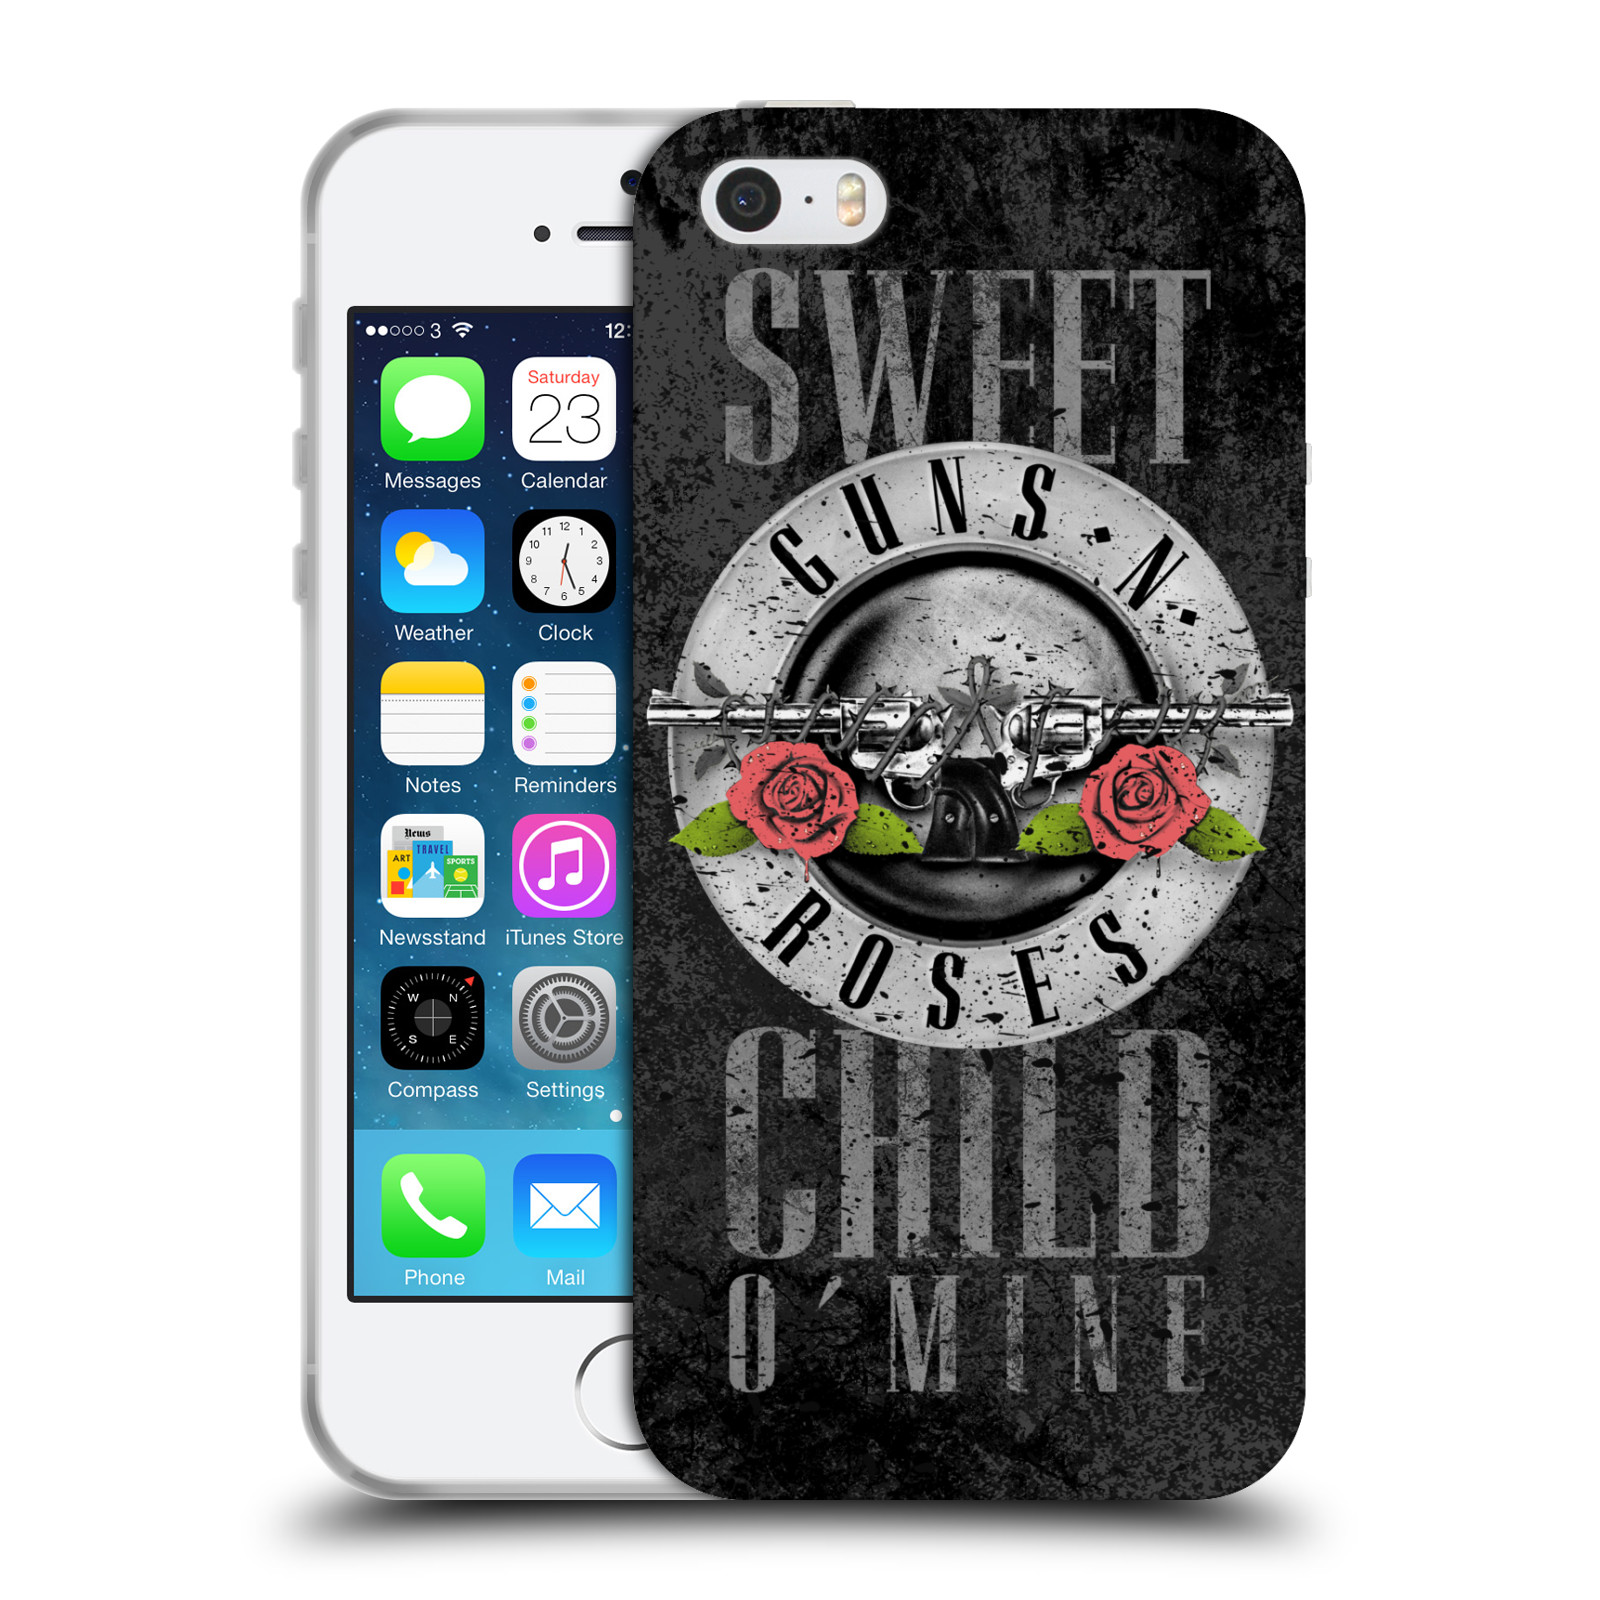 Silikonové pouzdro na mobil Apple iPhone 5, 5S, SE - Head Case - Guns N' Roses - Sweet Child (Silikonový kryt, obal, pouzdro na mobilní telefon Apple iPhone SE, 5S a 5 s motivem Guns N' Roses - Sweet Child)